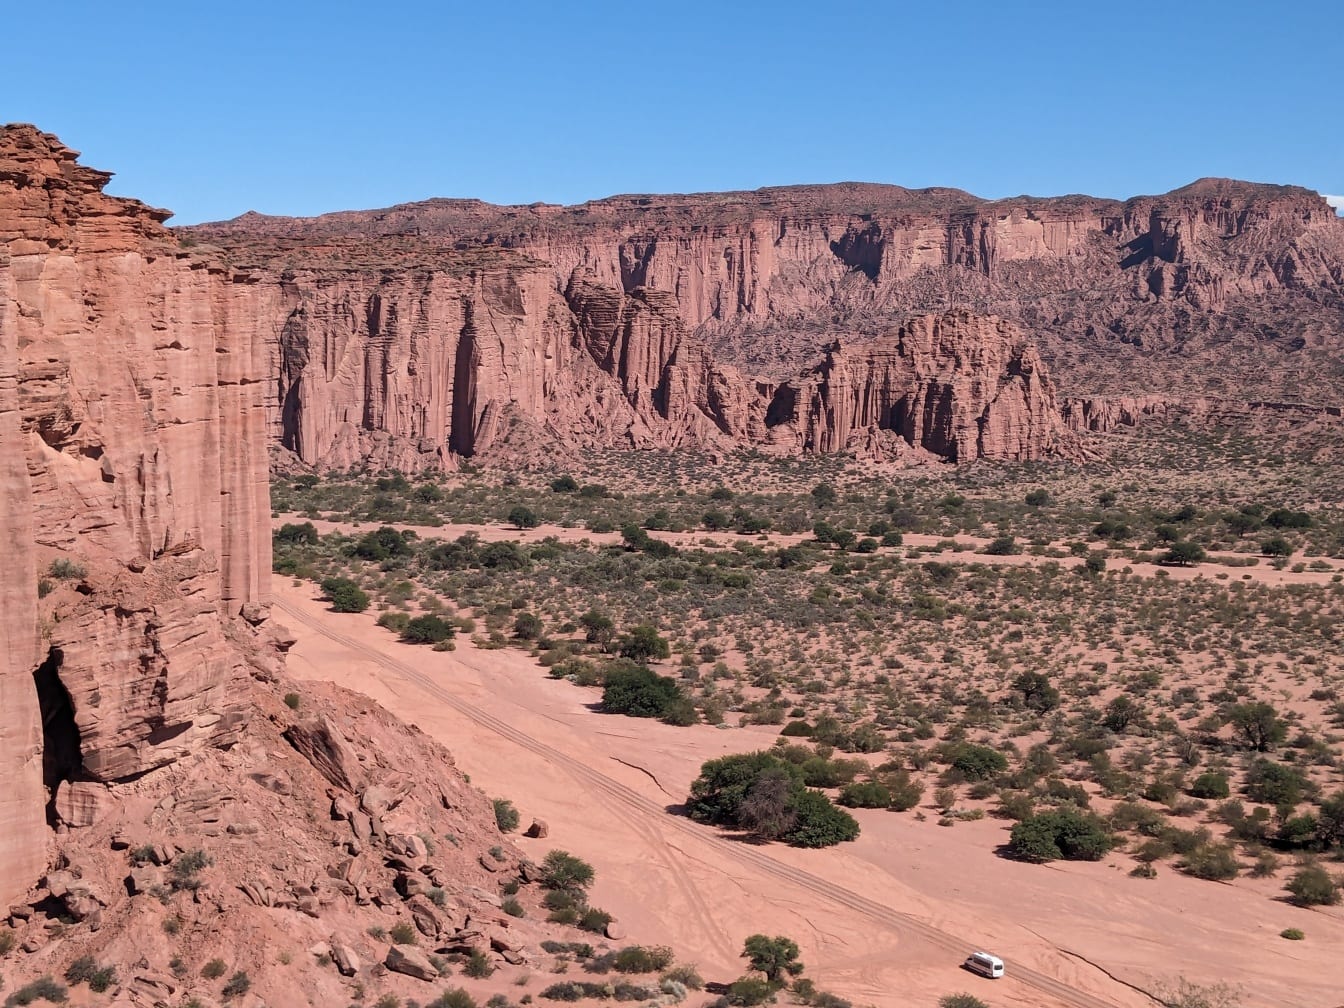 Flyfoto av ørkenlandskap med støvete veier og store klipper i det fjerne